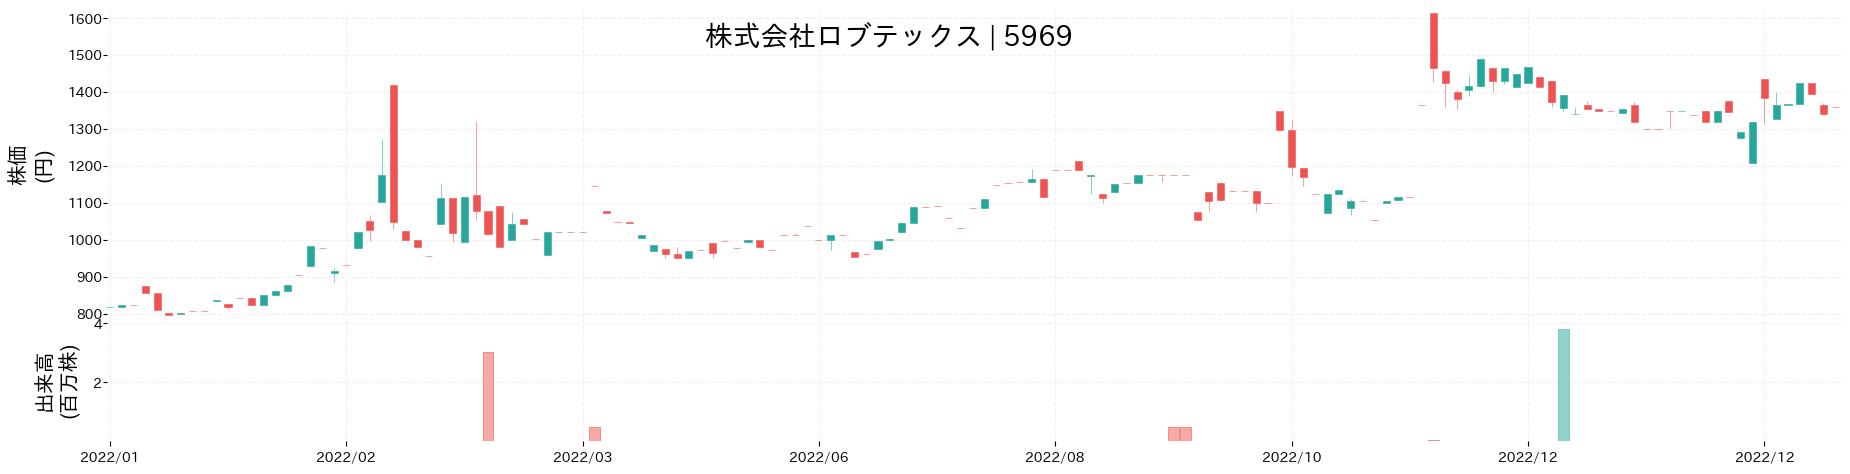 ロブテックスの株価推移(2022)